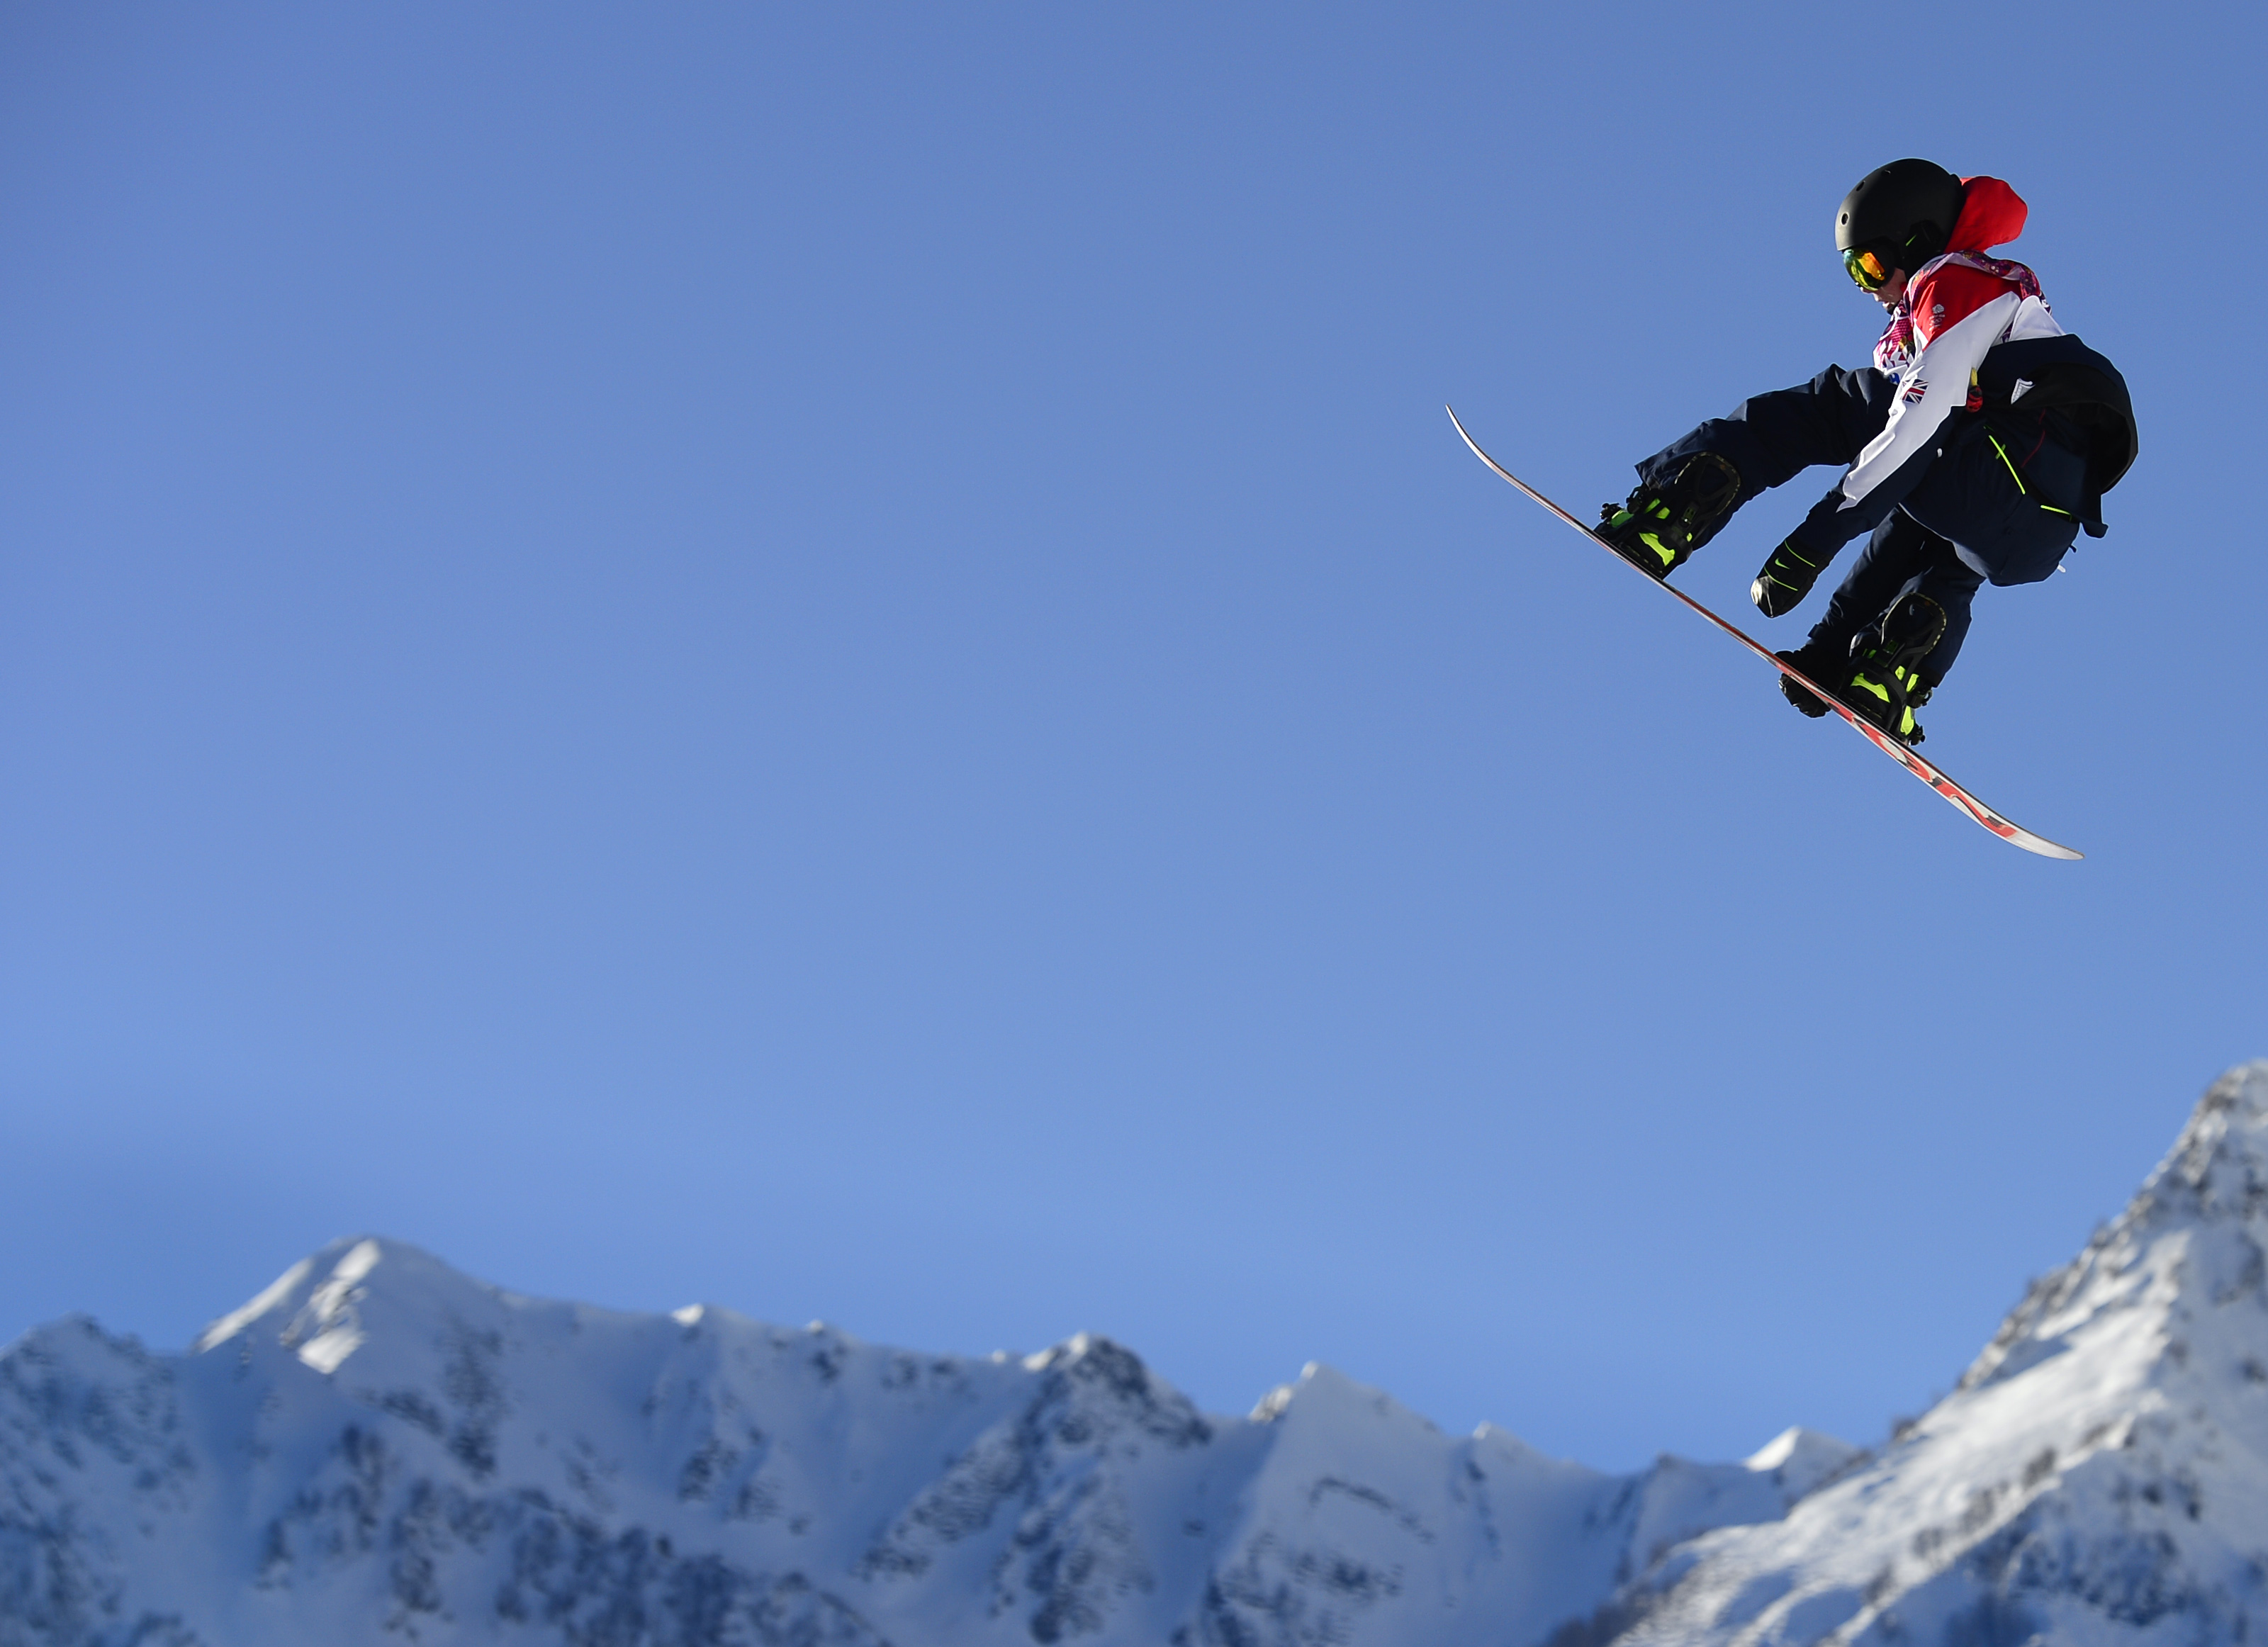 滑雪人-高清晰阿尔卑斯山滑雪圣地冬季游乐园壁纸下载